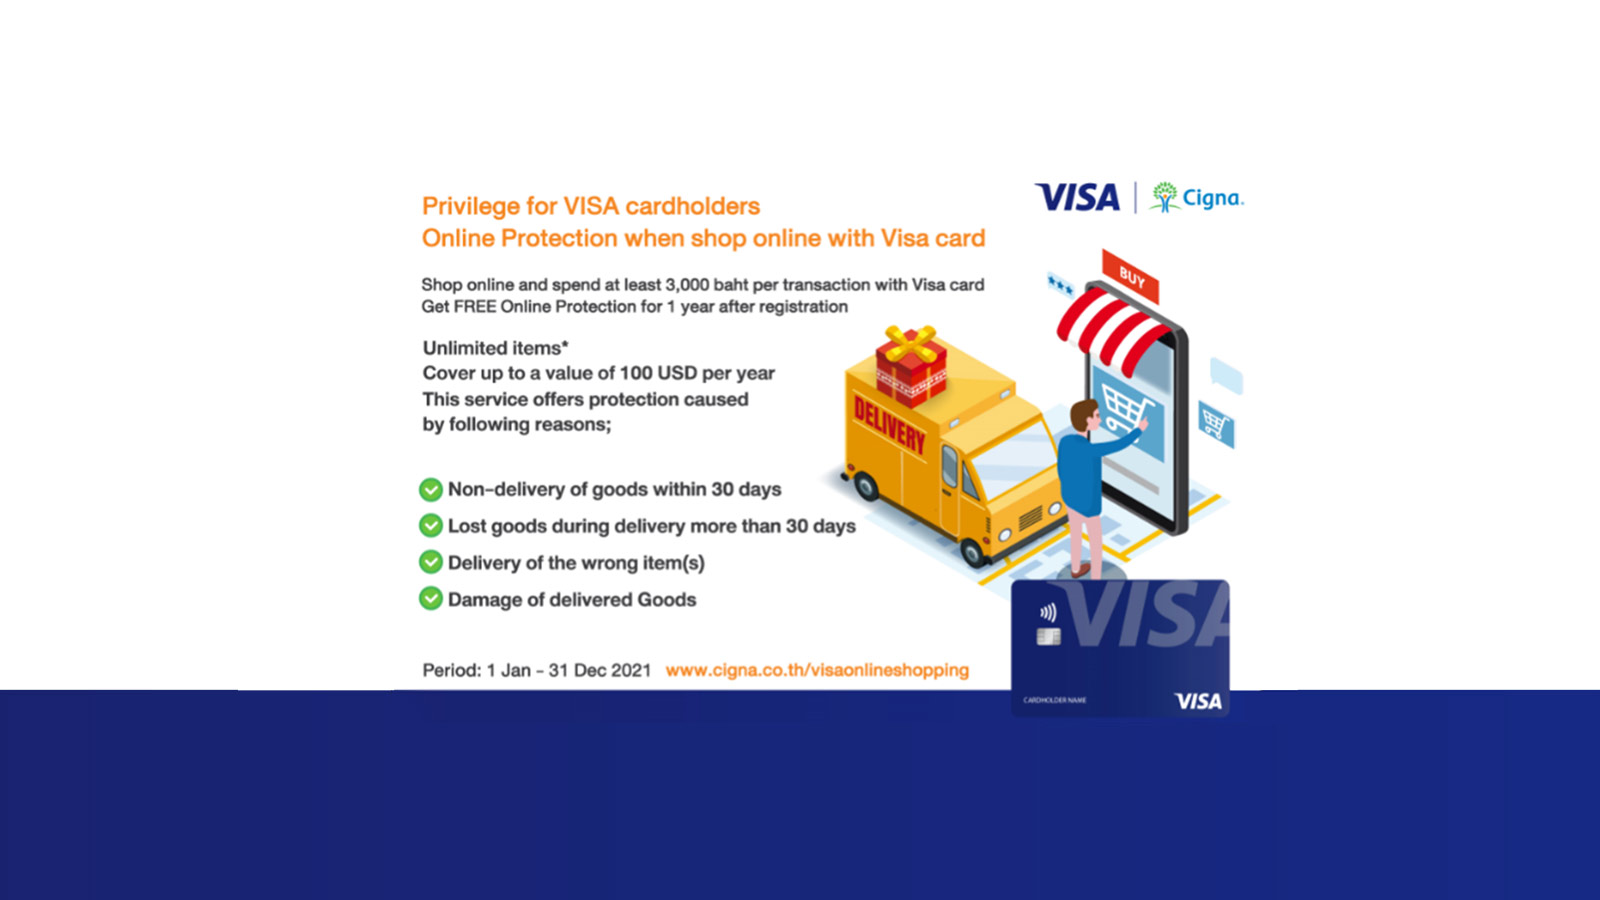 th-online-protection-visa-classic-gold-platinum-en-1600x900